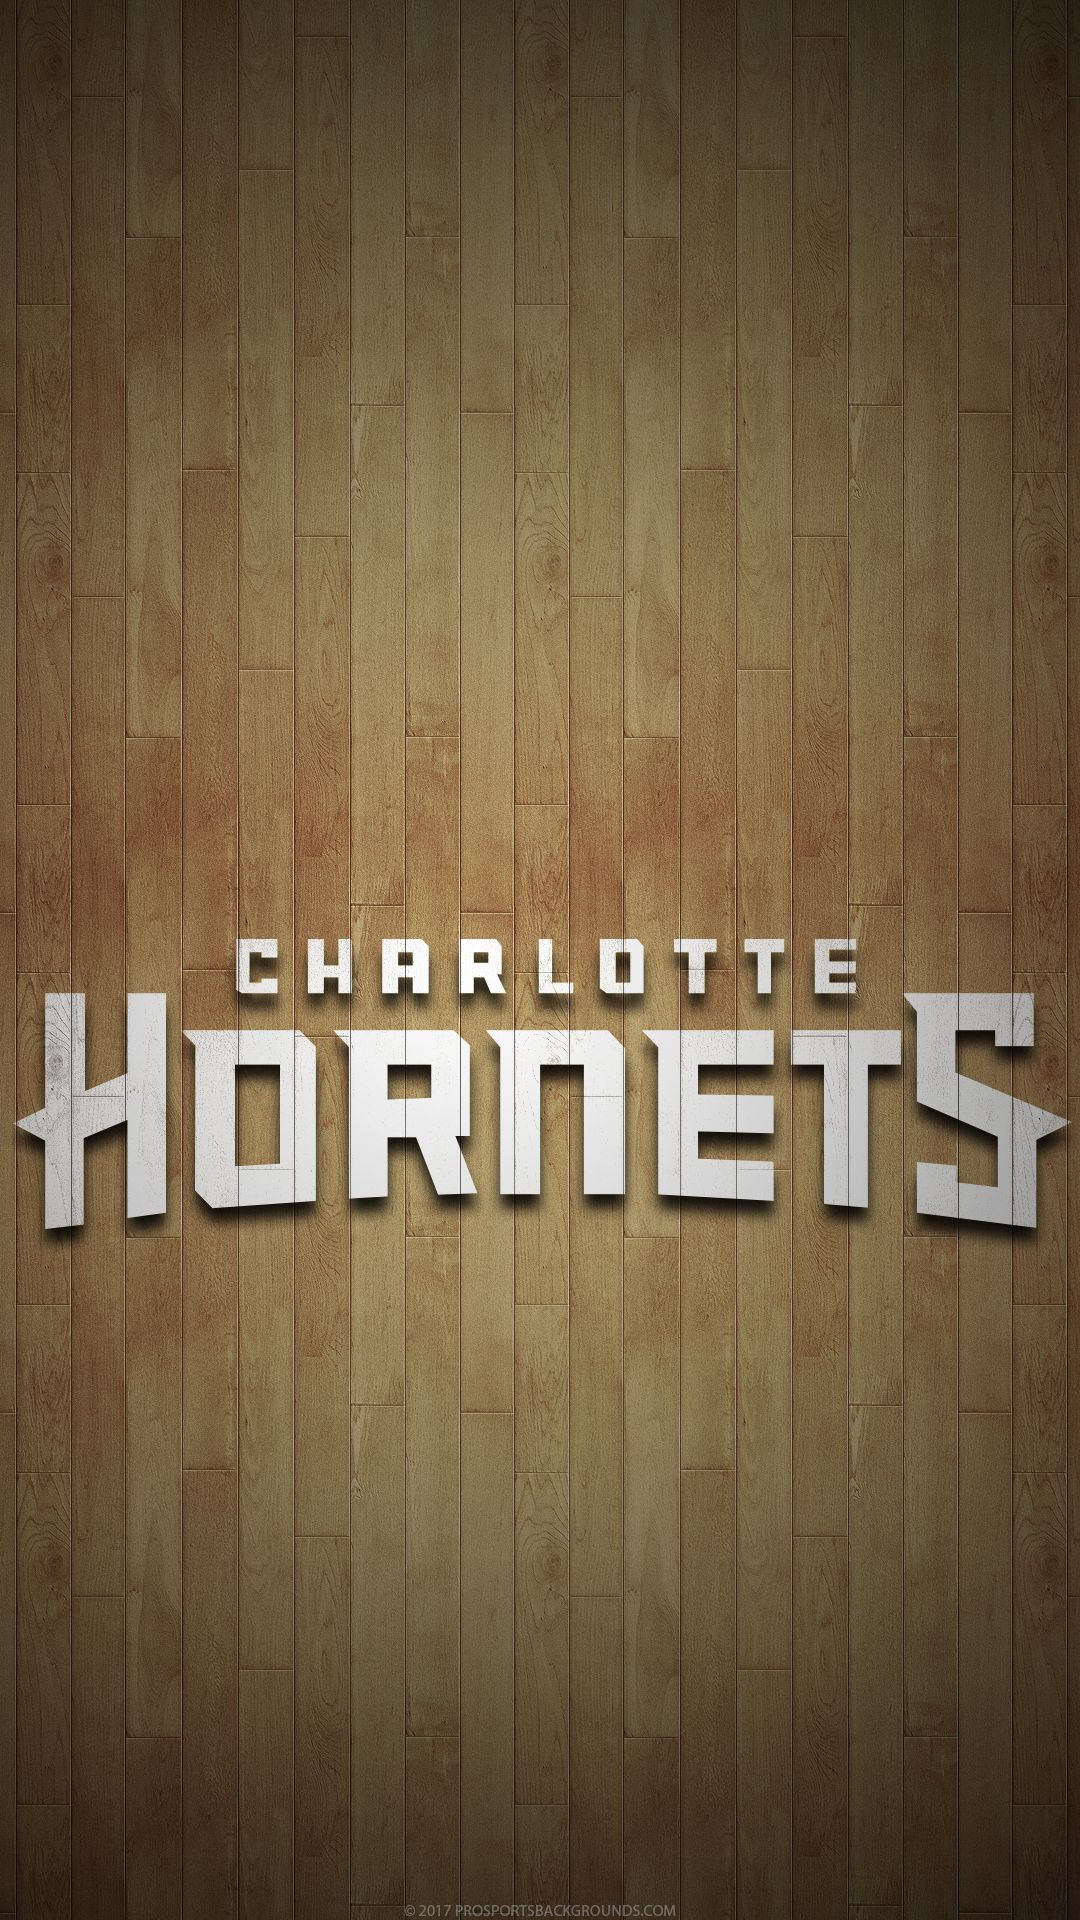 Made a Hornets Mobile Wallpaper! : r/CharlotteHornets